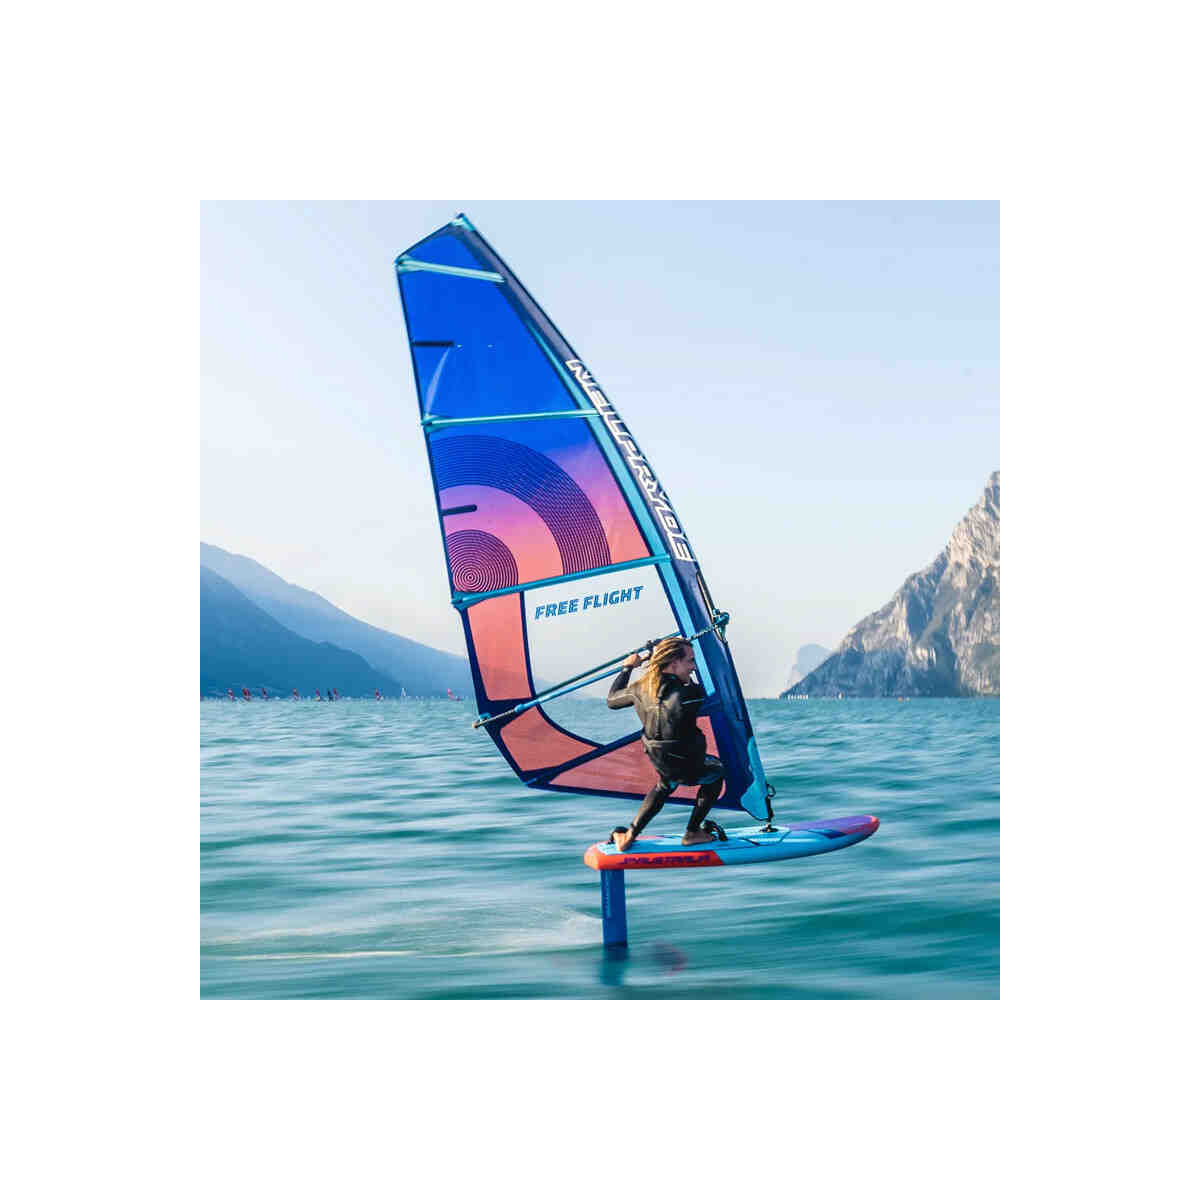 Quelle taille de voile choisir en windsurf ?